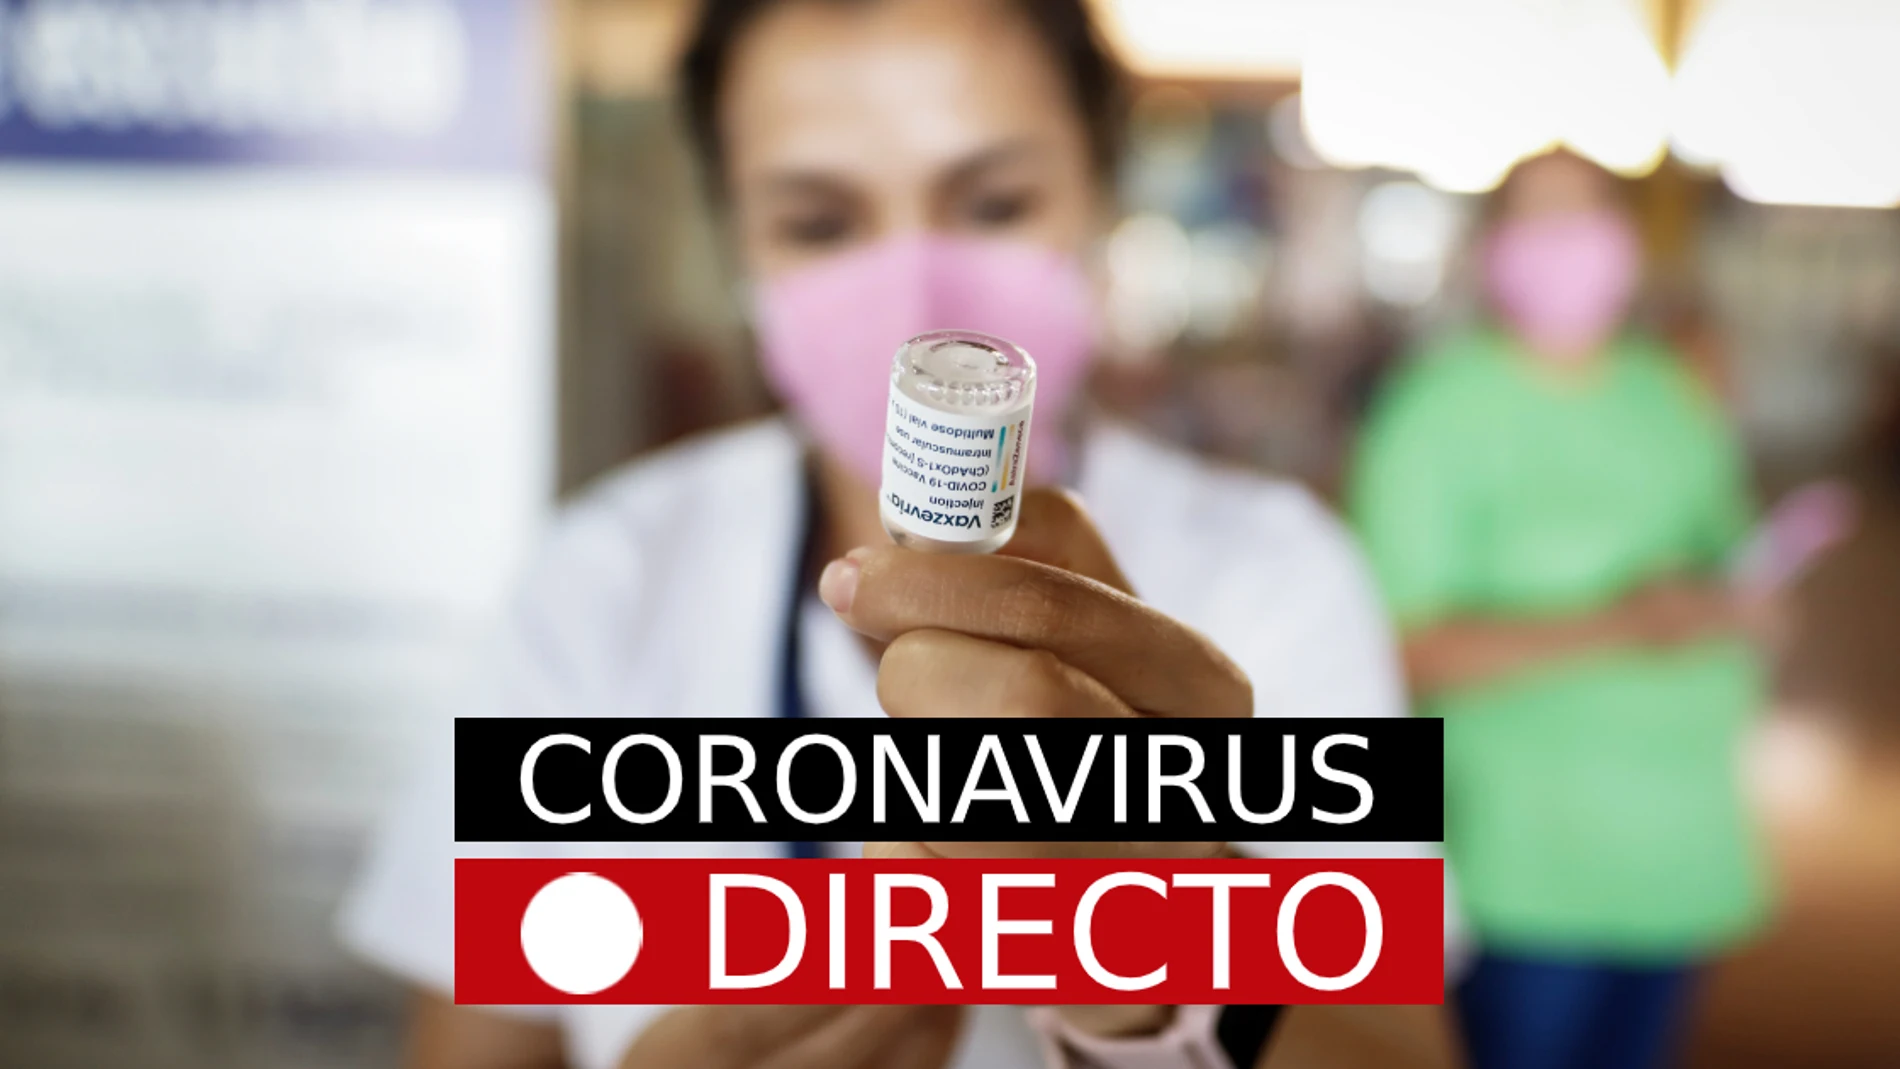 Última hora de coronavirus en España, en directo: Ómicron, pasaporte COVID e incidencia, hoy